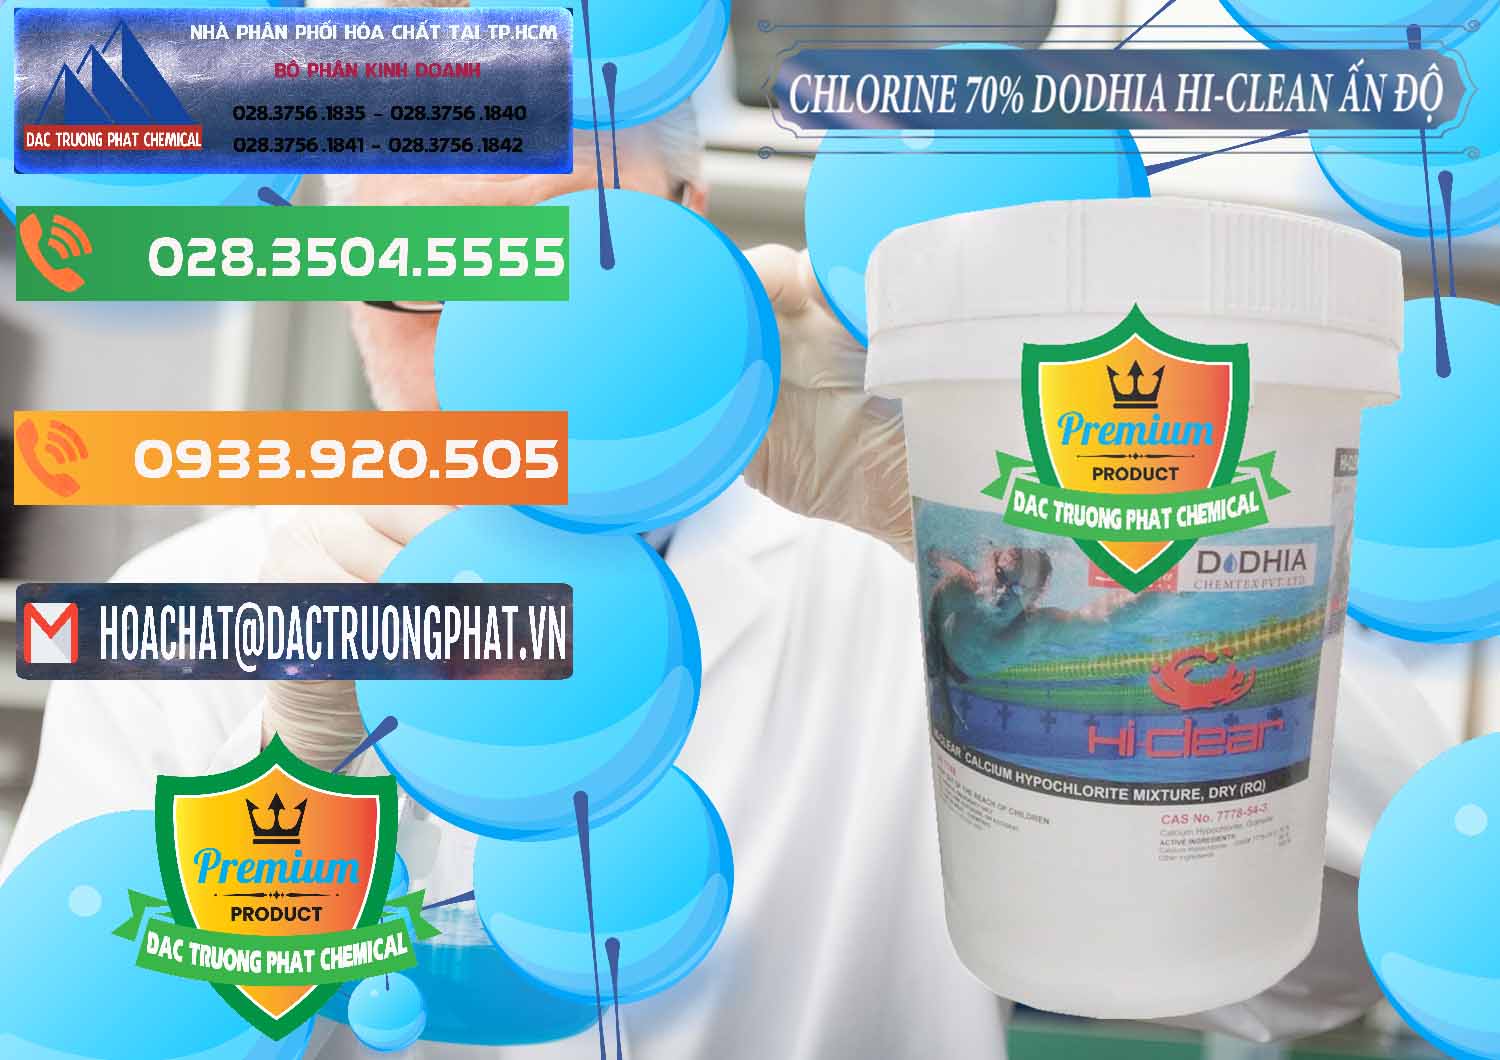 Nơi cung ứng ( bán ) Chlorine – Clorin 70% Dodhia Hi-Clean Ấn Độ India - 0214 - Nhà cung cấp và kinh doanh hóa chất tại TP.HCM - hoachatxulynuoc.com.vn